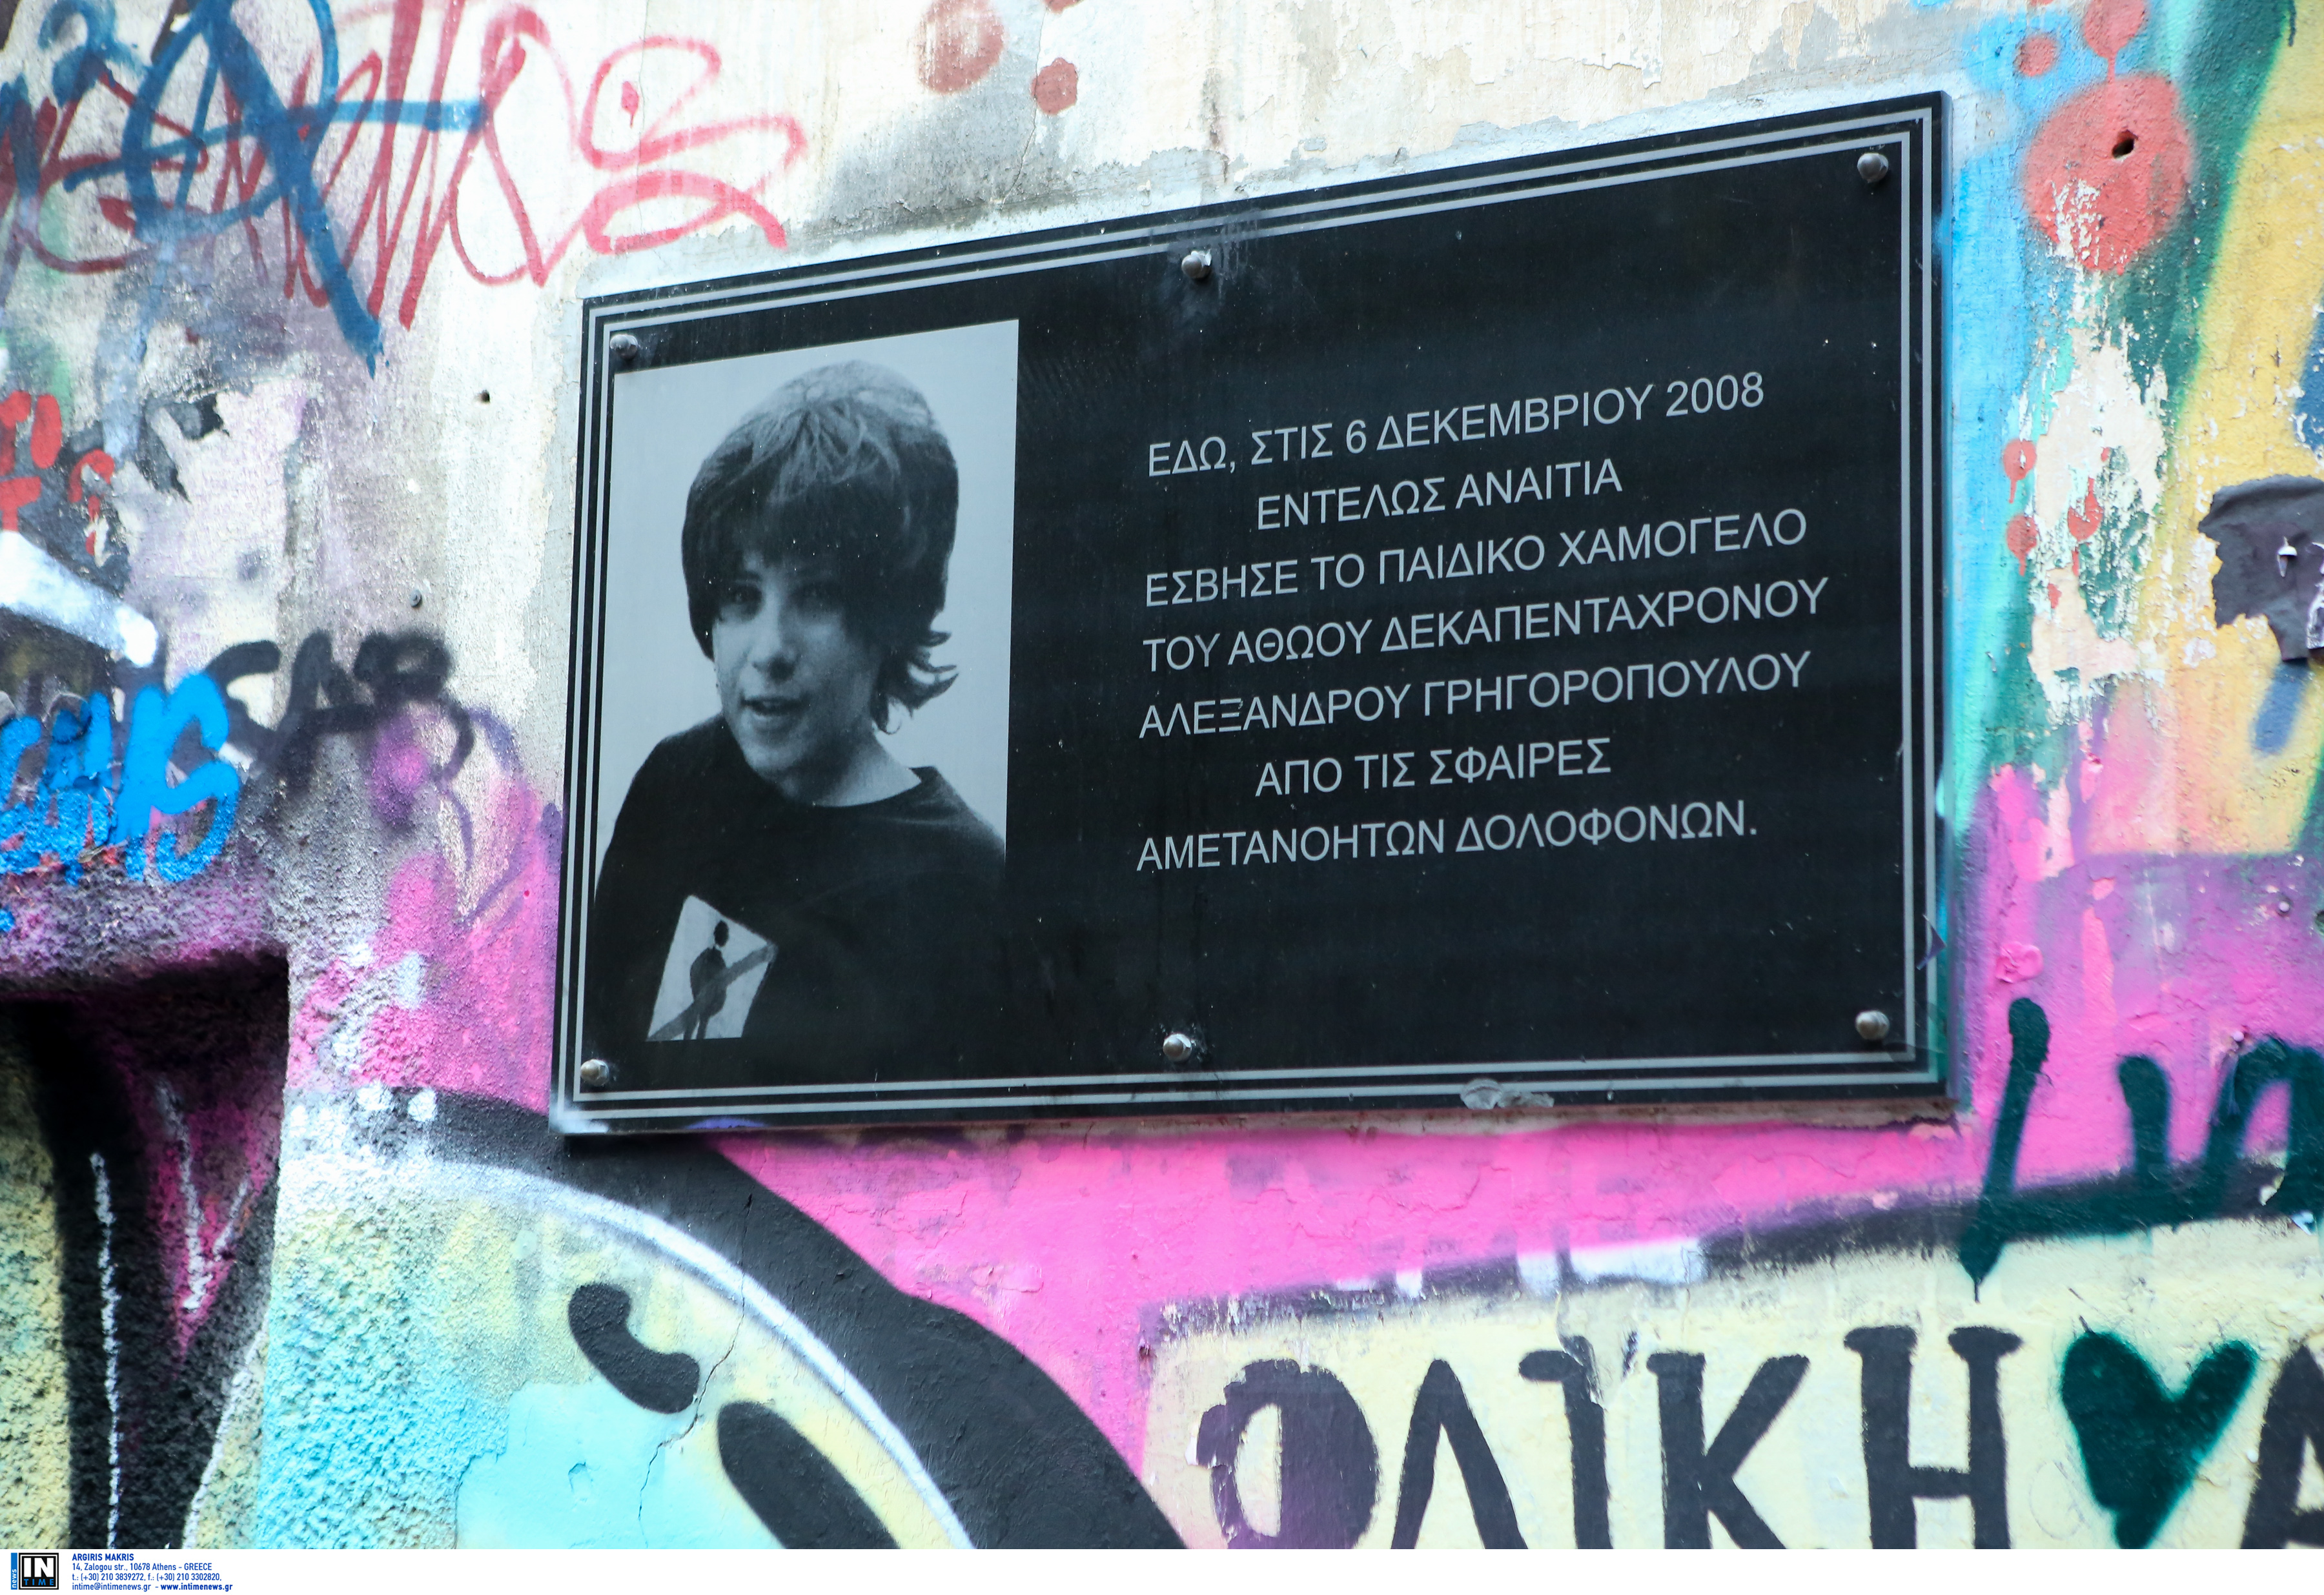 Αλέξανδρος Γρηγορόπουλος: Κάλεσμα μνήμης επωνύμων 12 χρόνια μετά τη  δολοφονία του